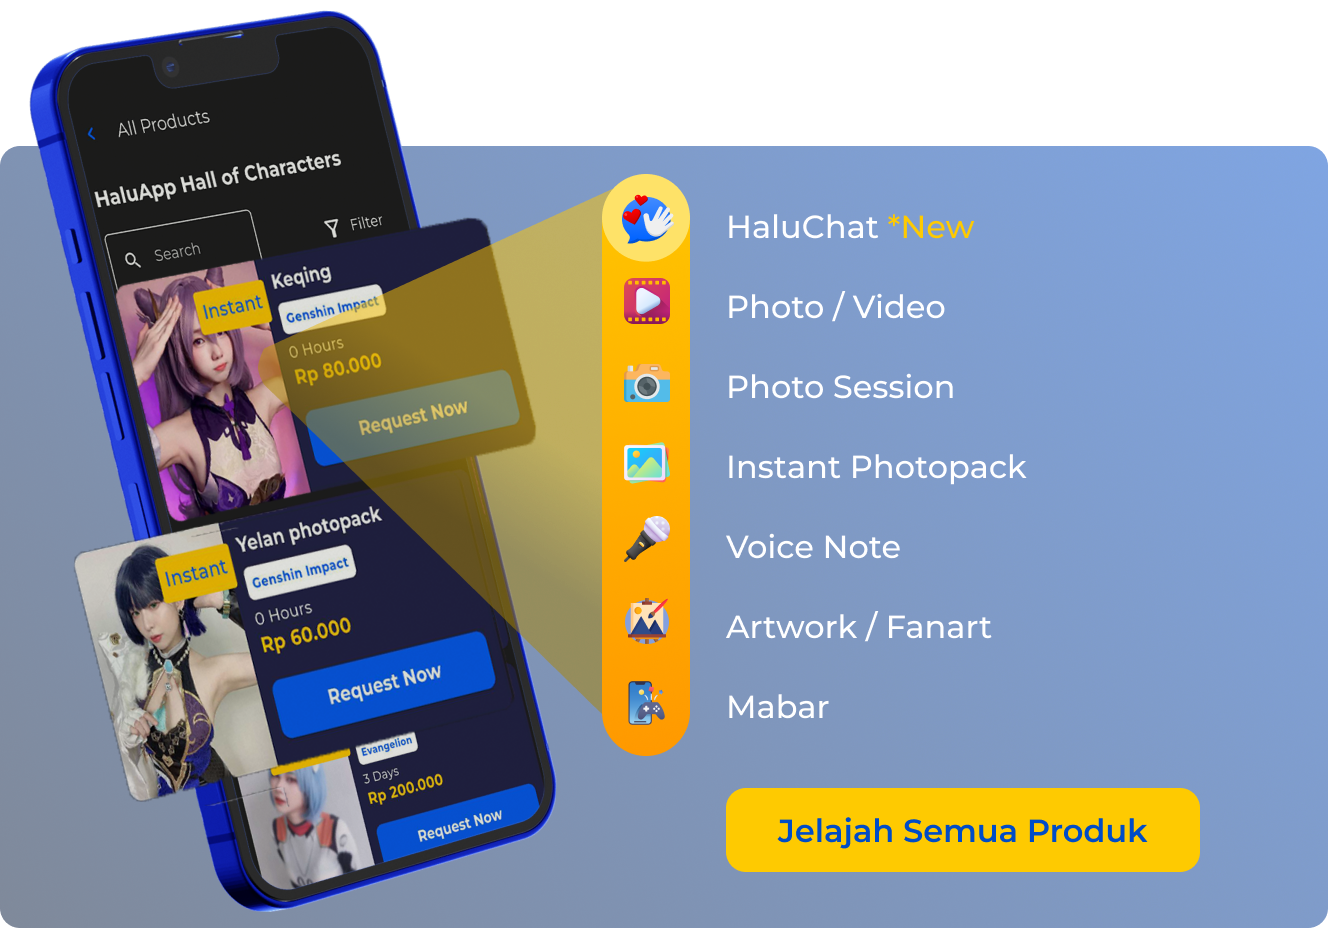 Semua produk ada di HaluApp!. HaluChat Photo / Video Photo Session Instant Photopack Voice Note Artwork / Fanart Mabar. Jelajah Semua Produk HaluApp